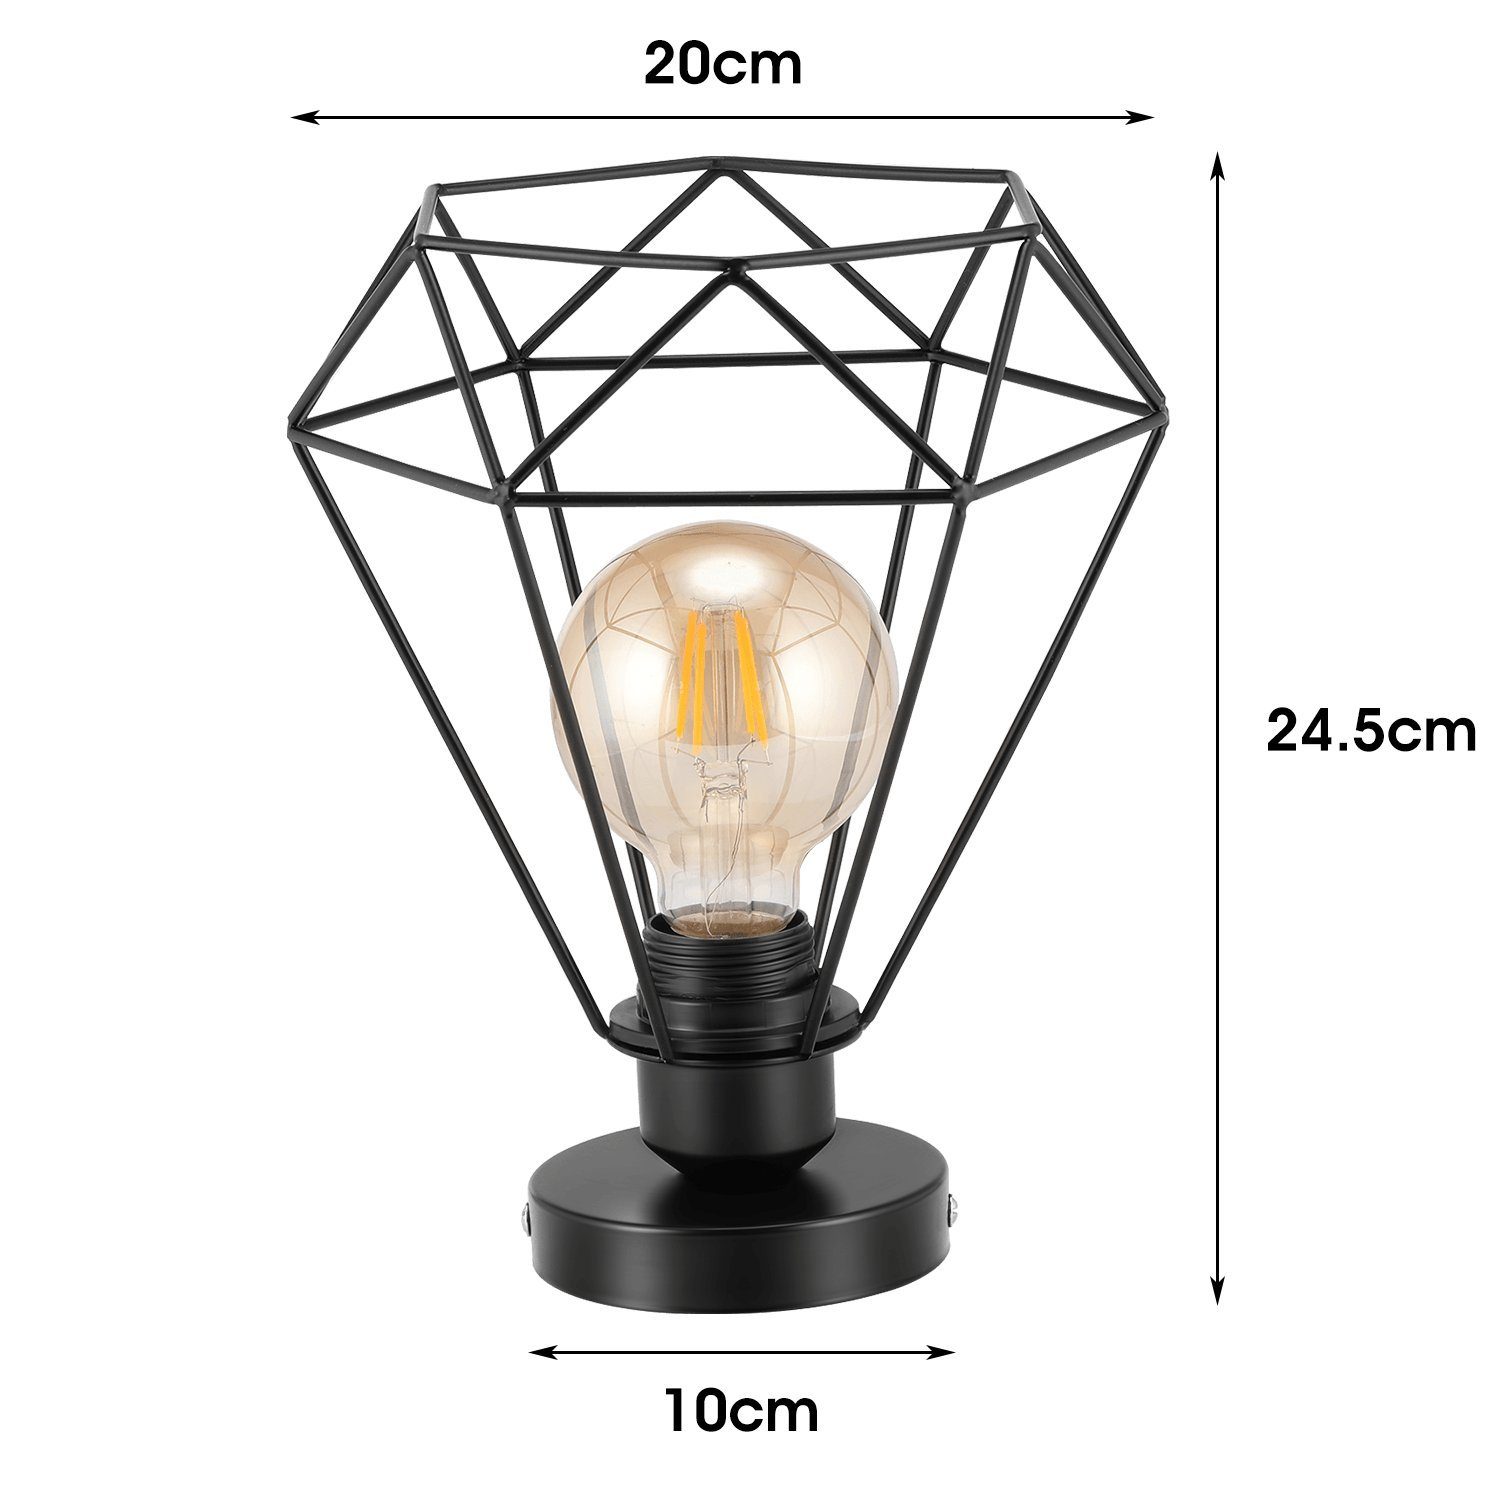 LETGOSPT Deckenleuchte LED Leuchte 1 Deckenlampe Glühbirne mit Diamant-Form E27 Stück Retro Metall